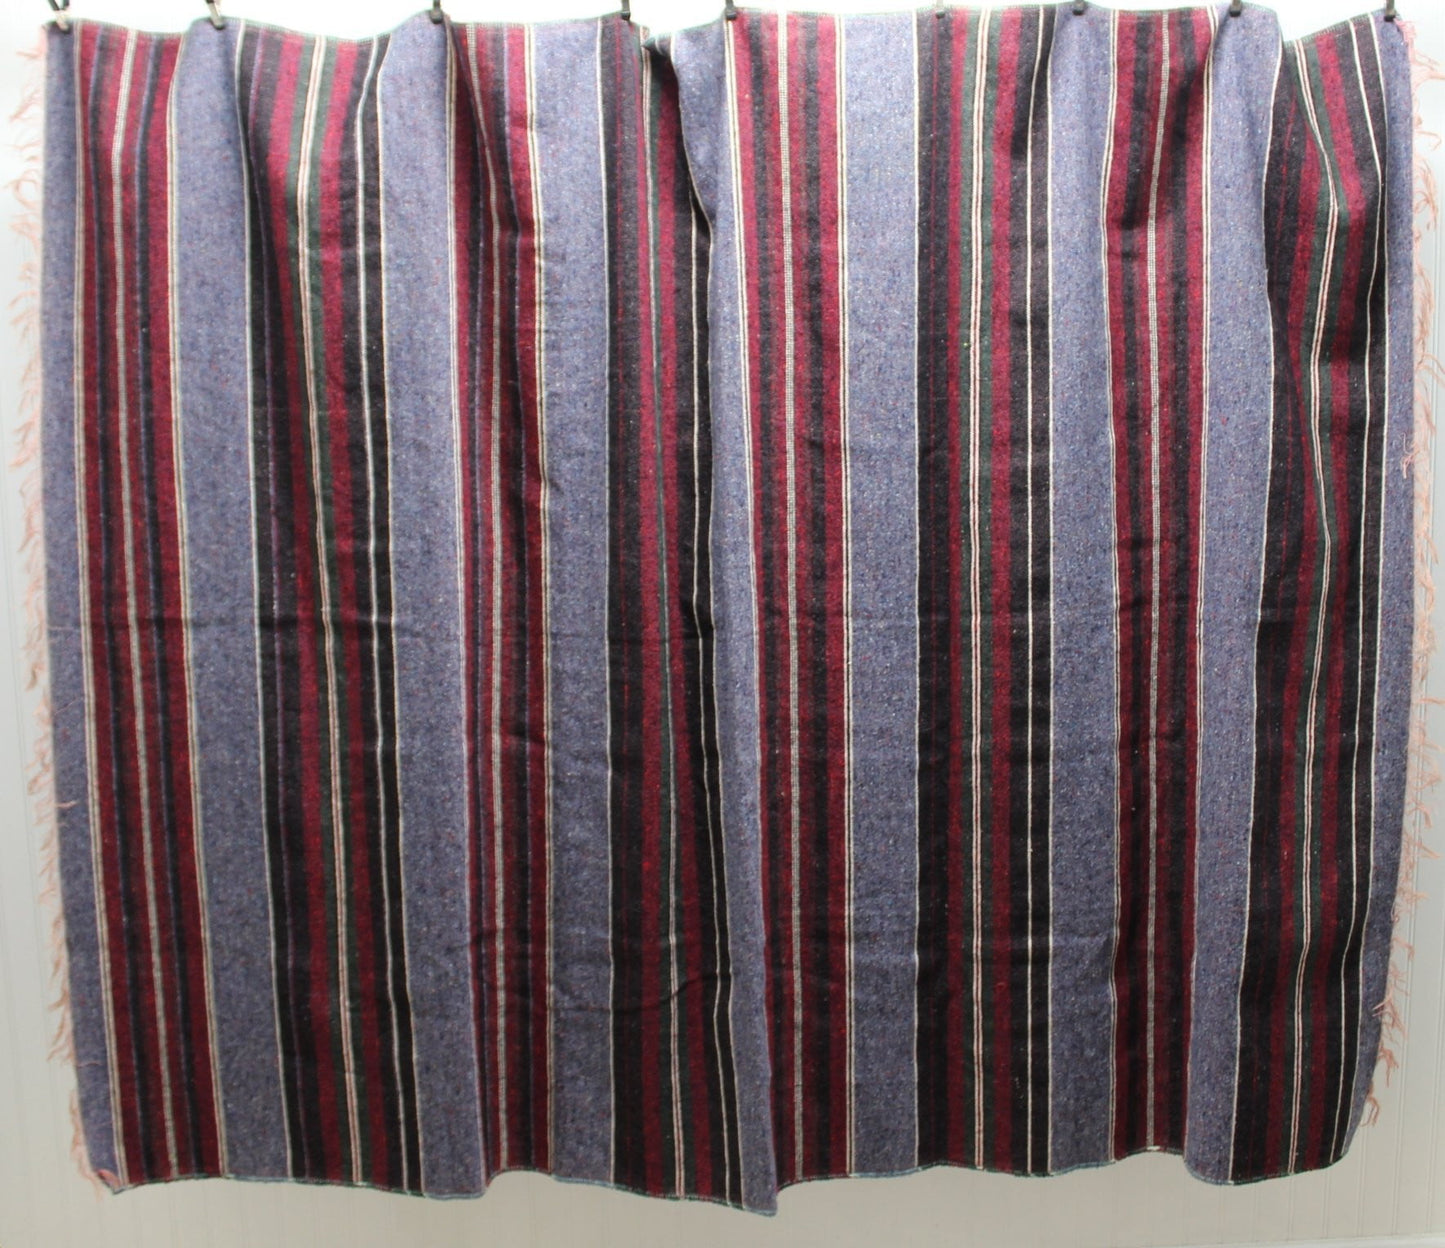 Unbranded Blanket Travel Rug - Loomed Cotton Blend Blues Purples Stripes - 80" X 58" Decor OOAK - Olde Kitchen & Home